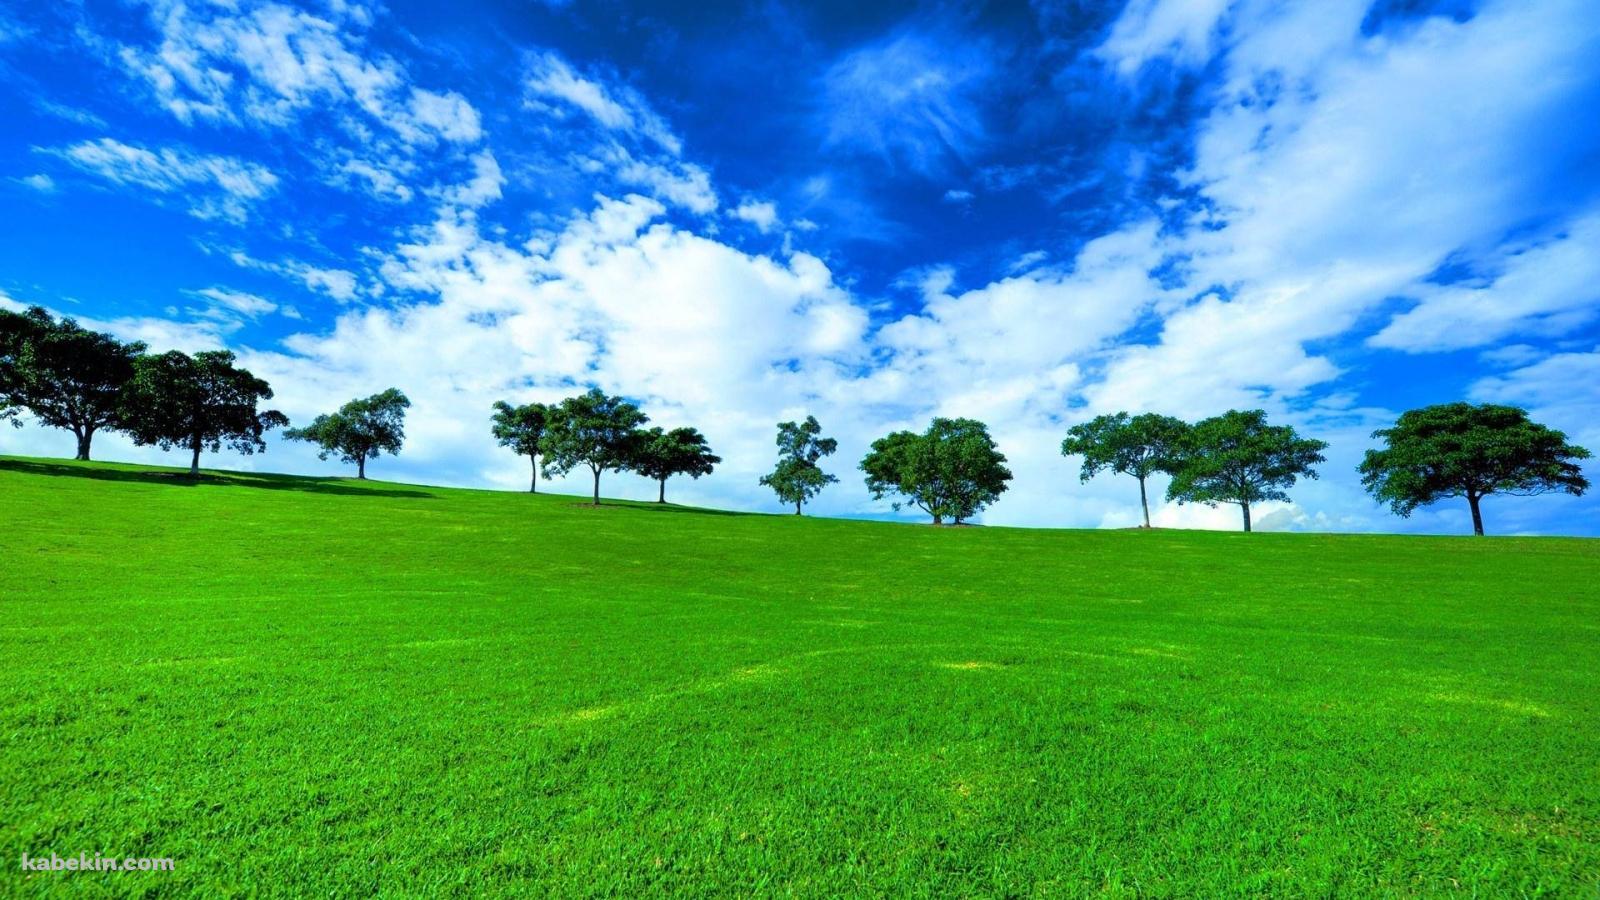 絶景 緑の草原と青い空の壁紙(1600px x 900px) 高画質 PC・デスクトップ用